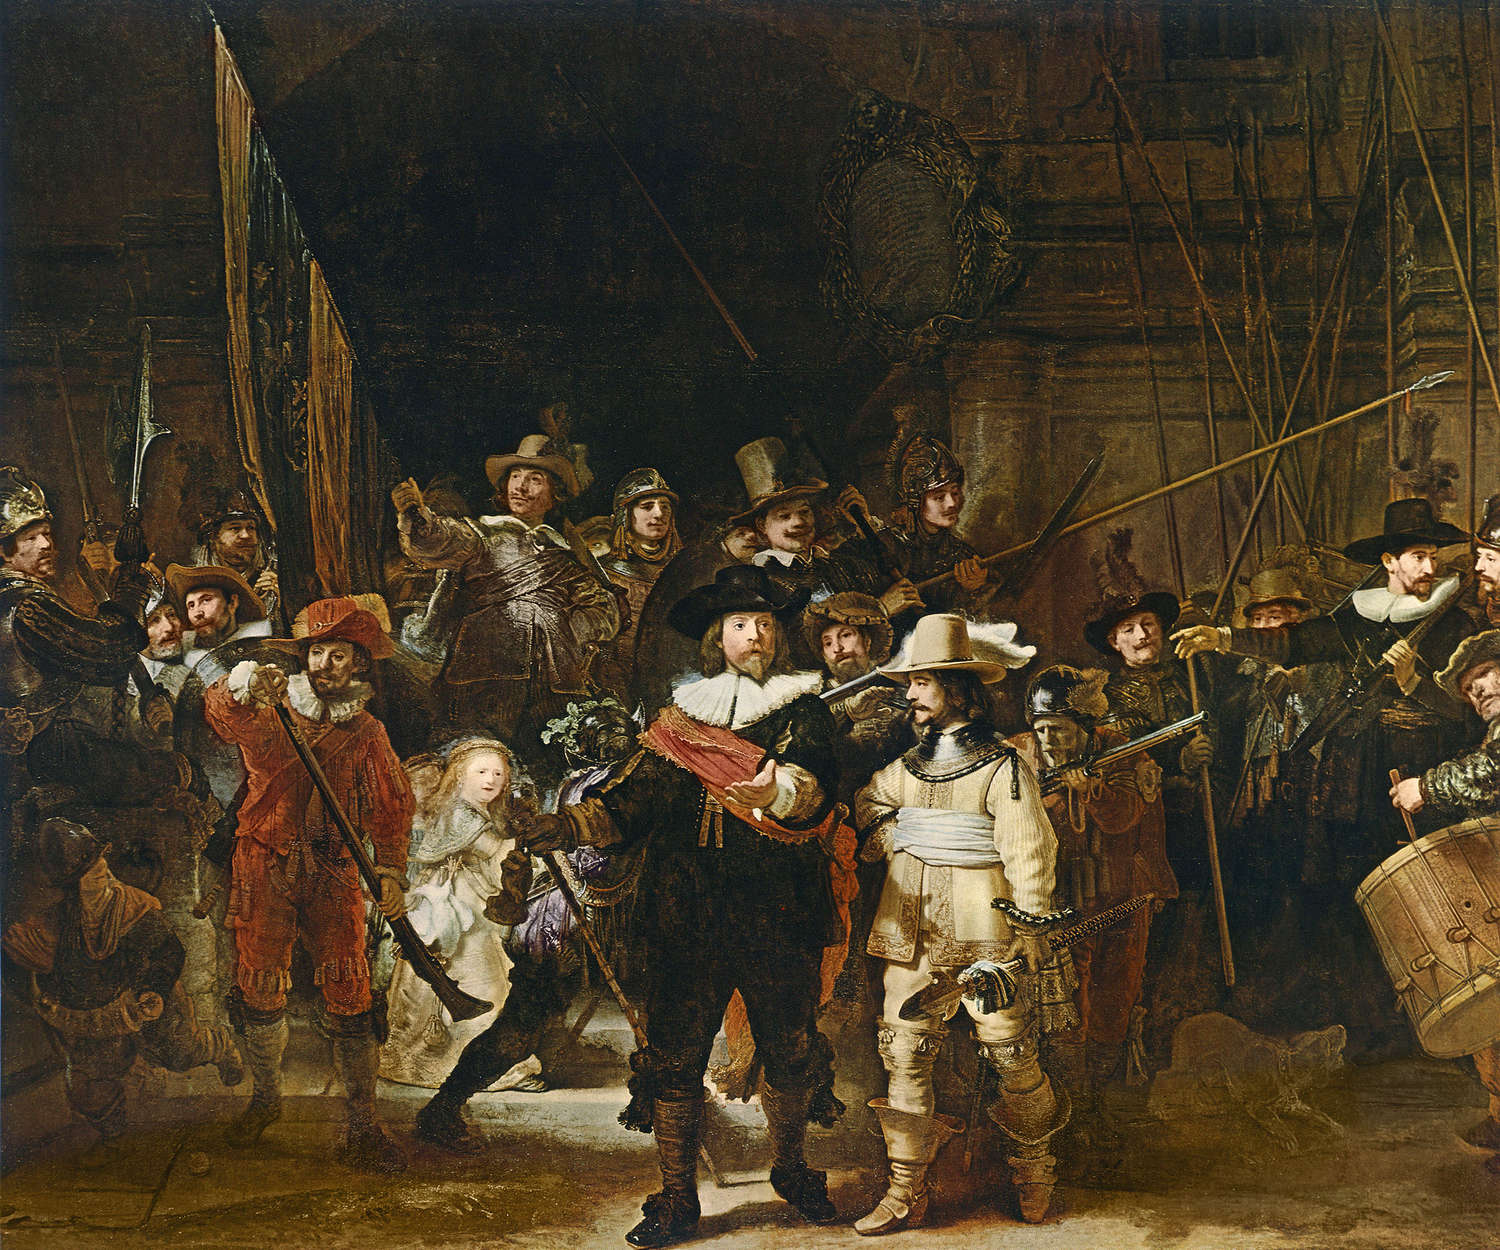             Photo wallpaper "The Night Watch" by Rembrandt van Rijn
        